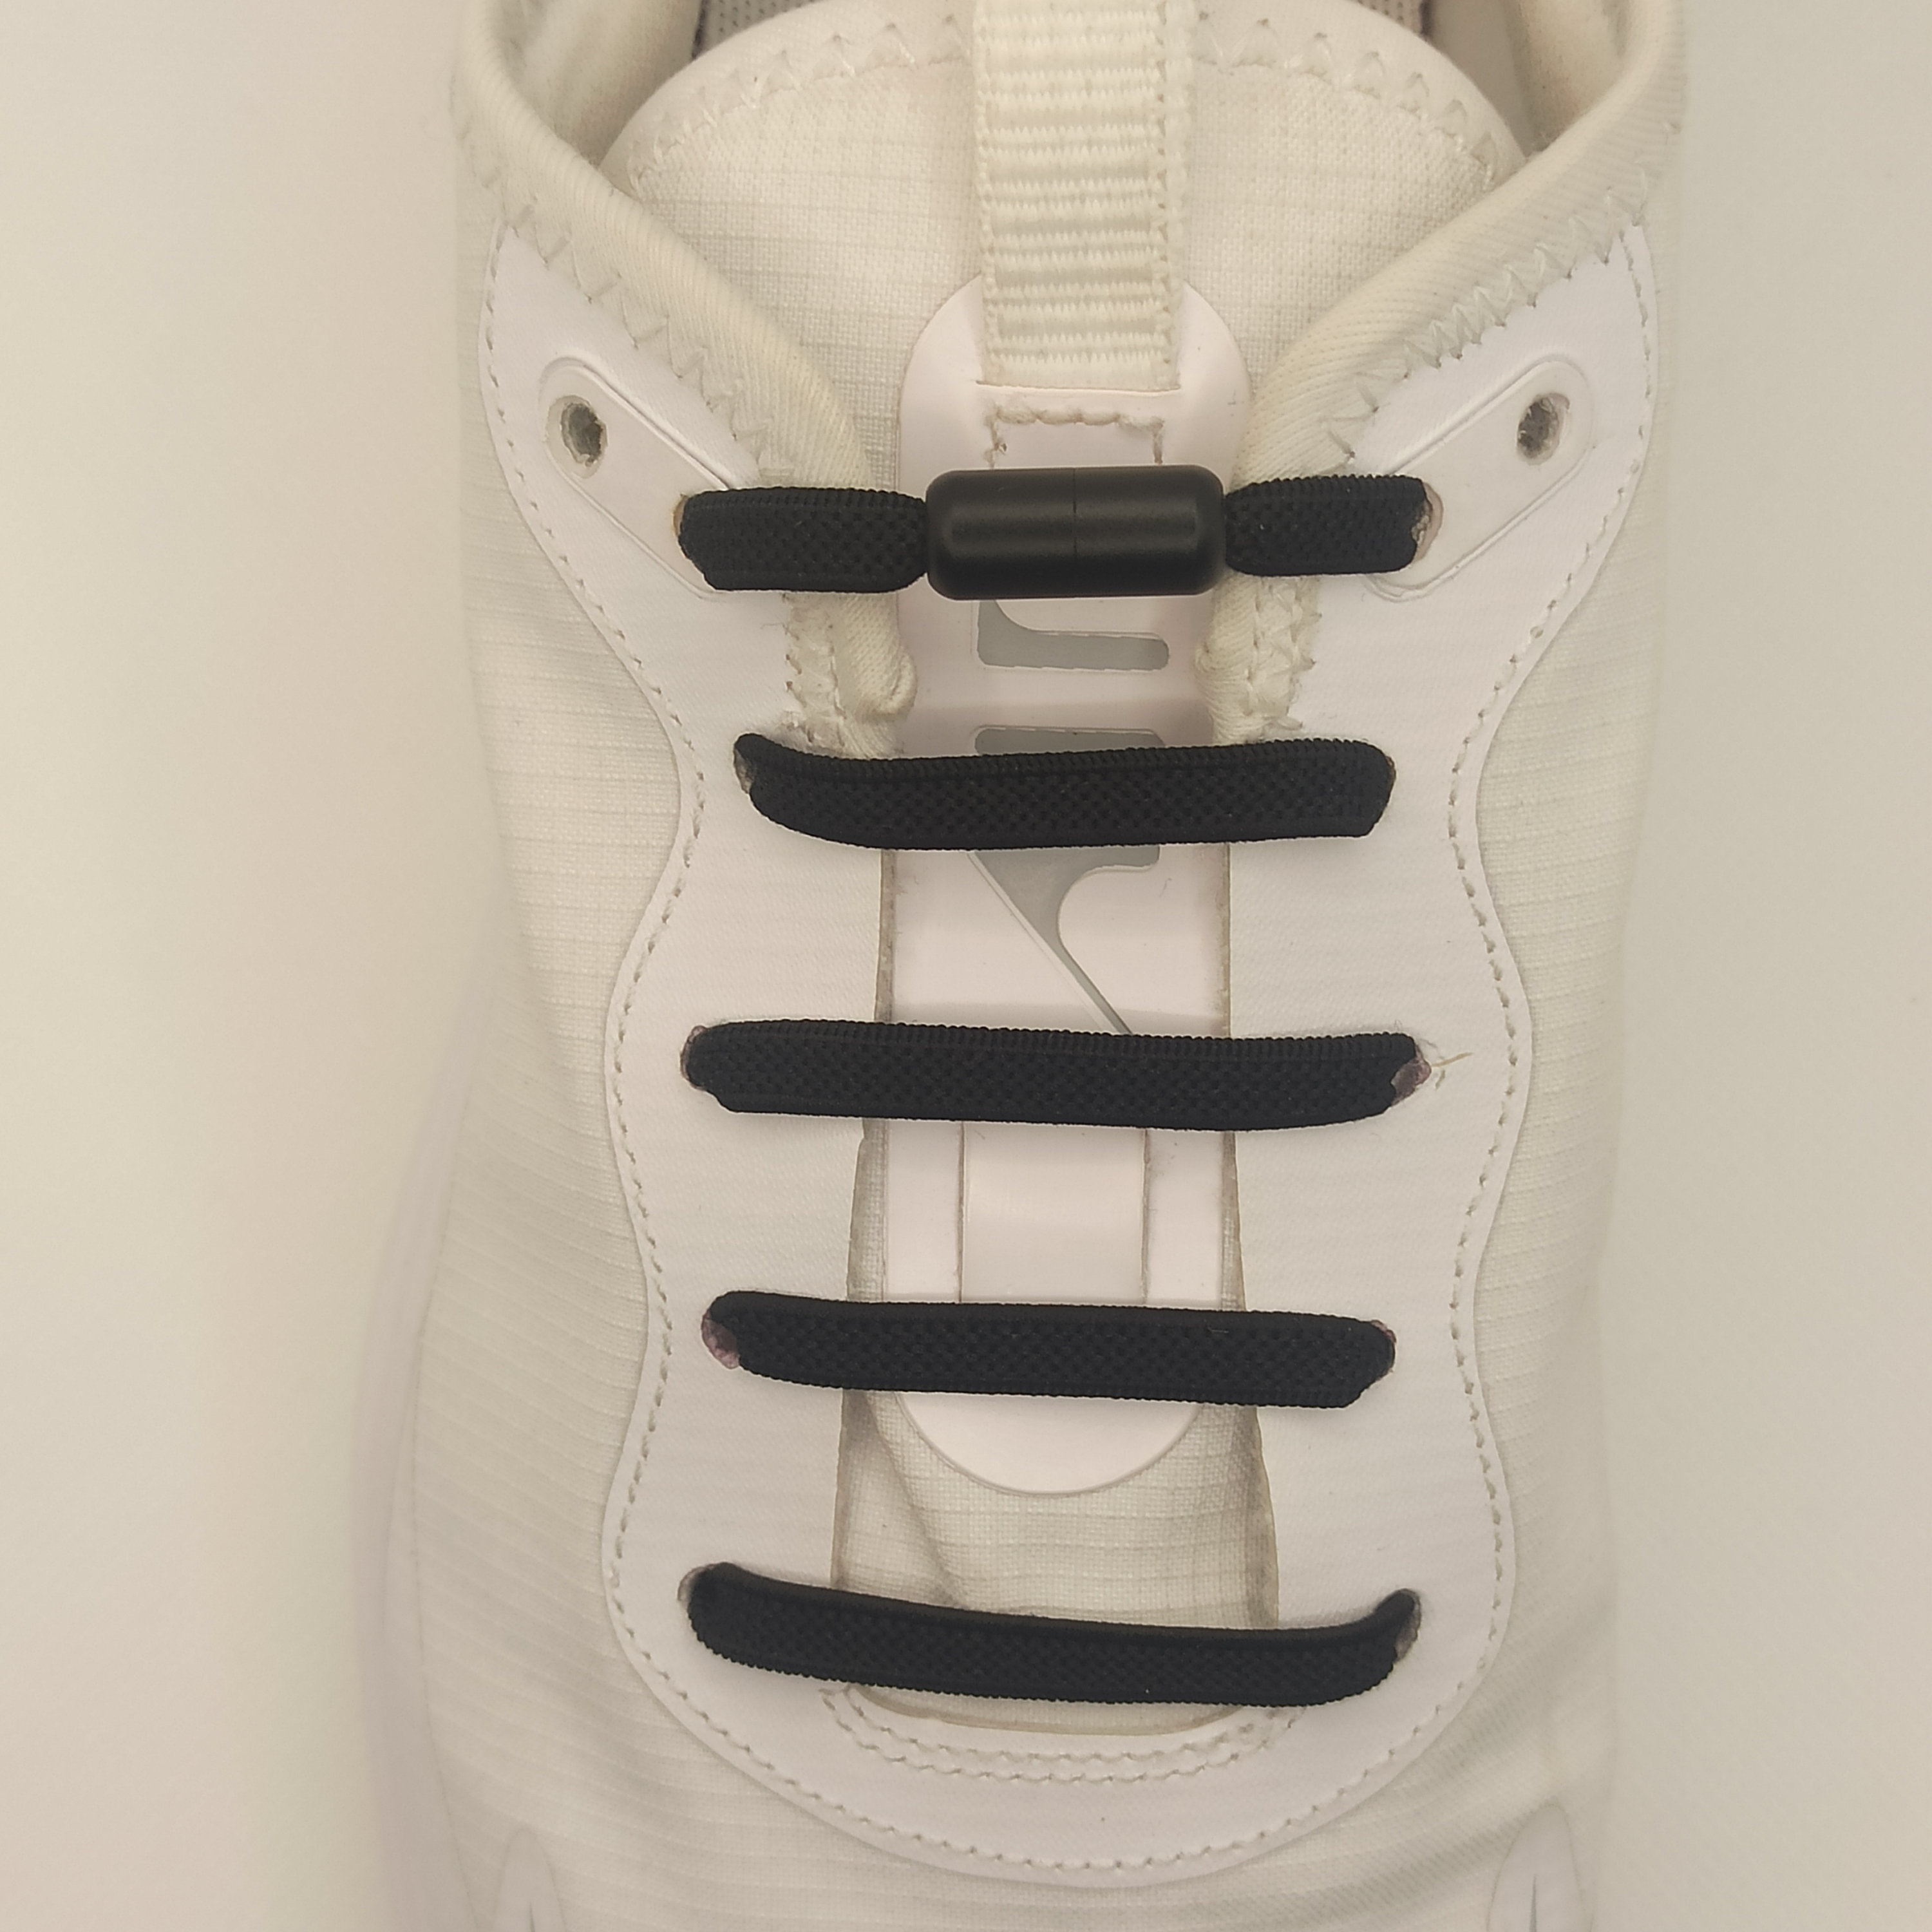 Personnaliser ses chaussures avec des lacets - Clem ATC